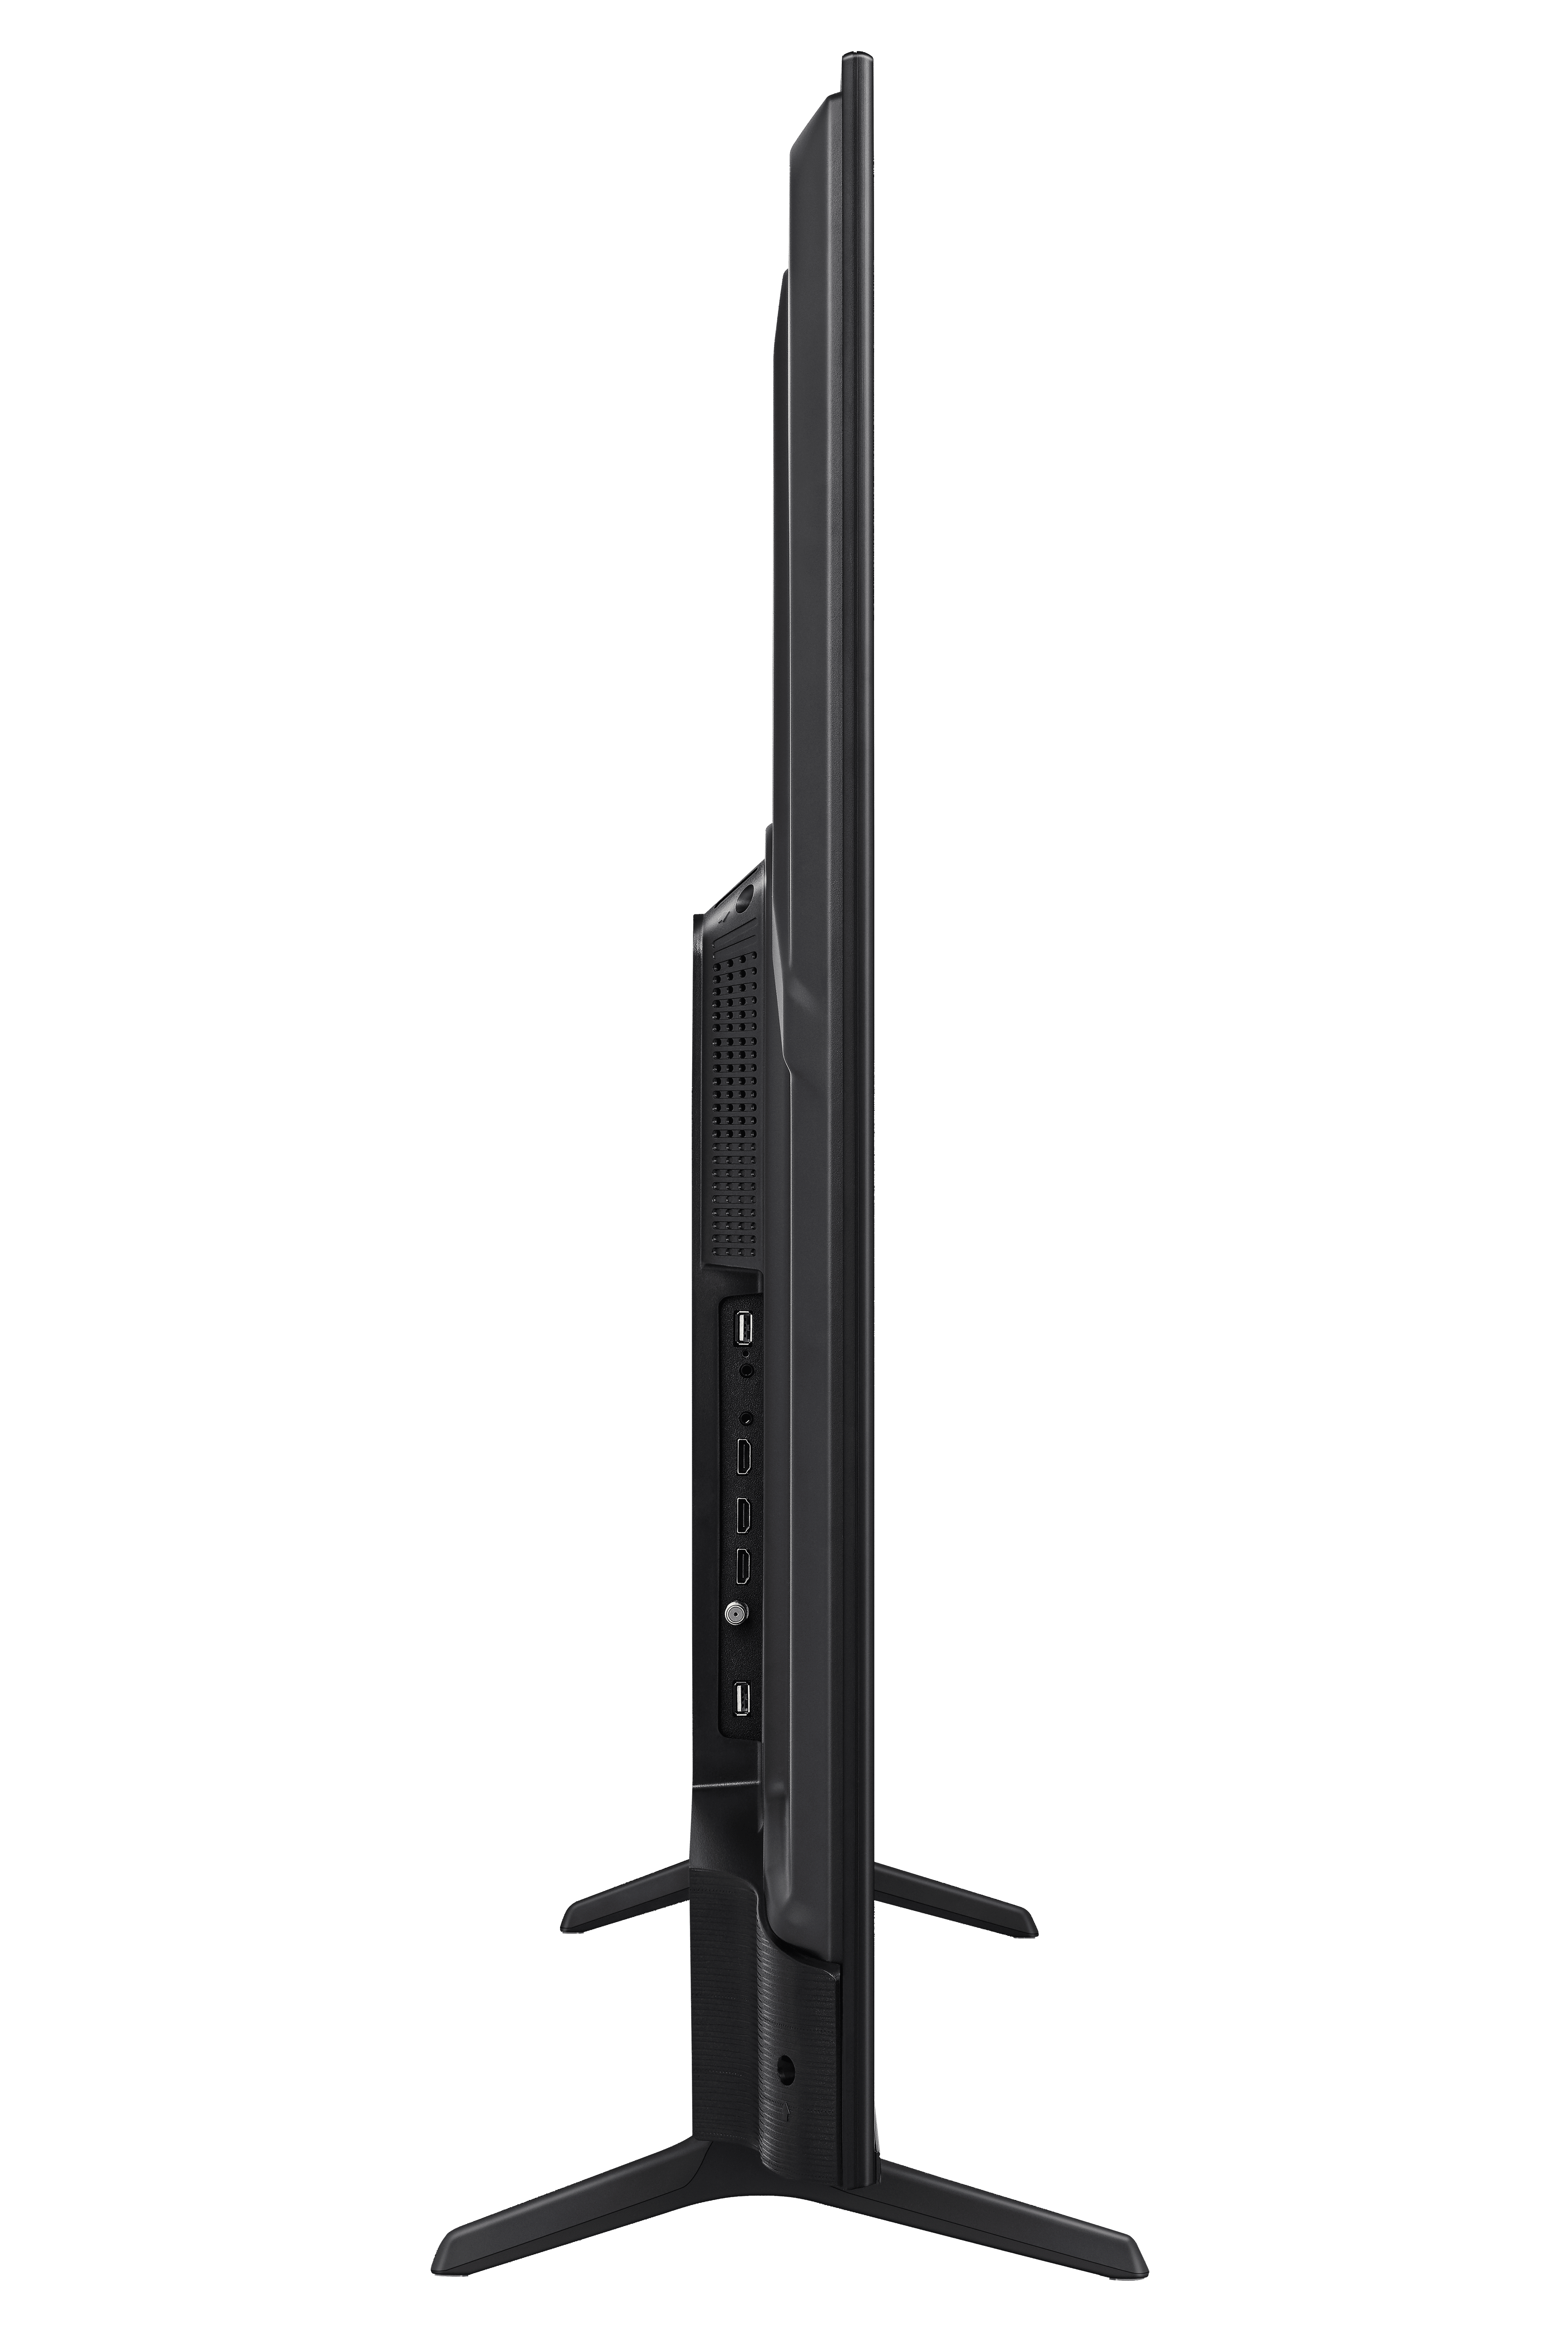 Hisense 55U6K Quantum ULED 4K TV - Hisense SA